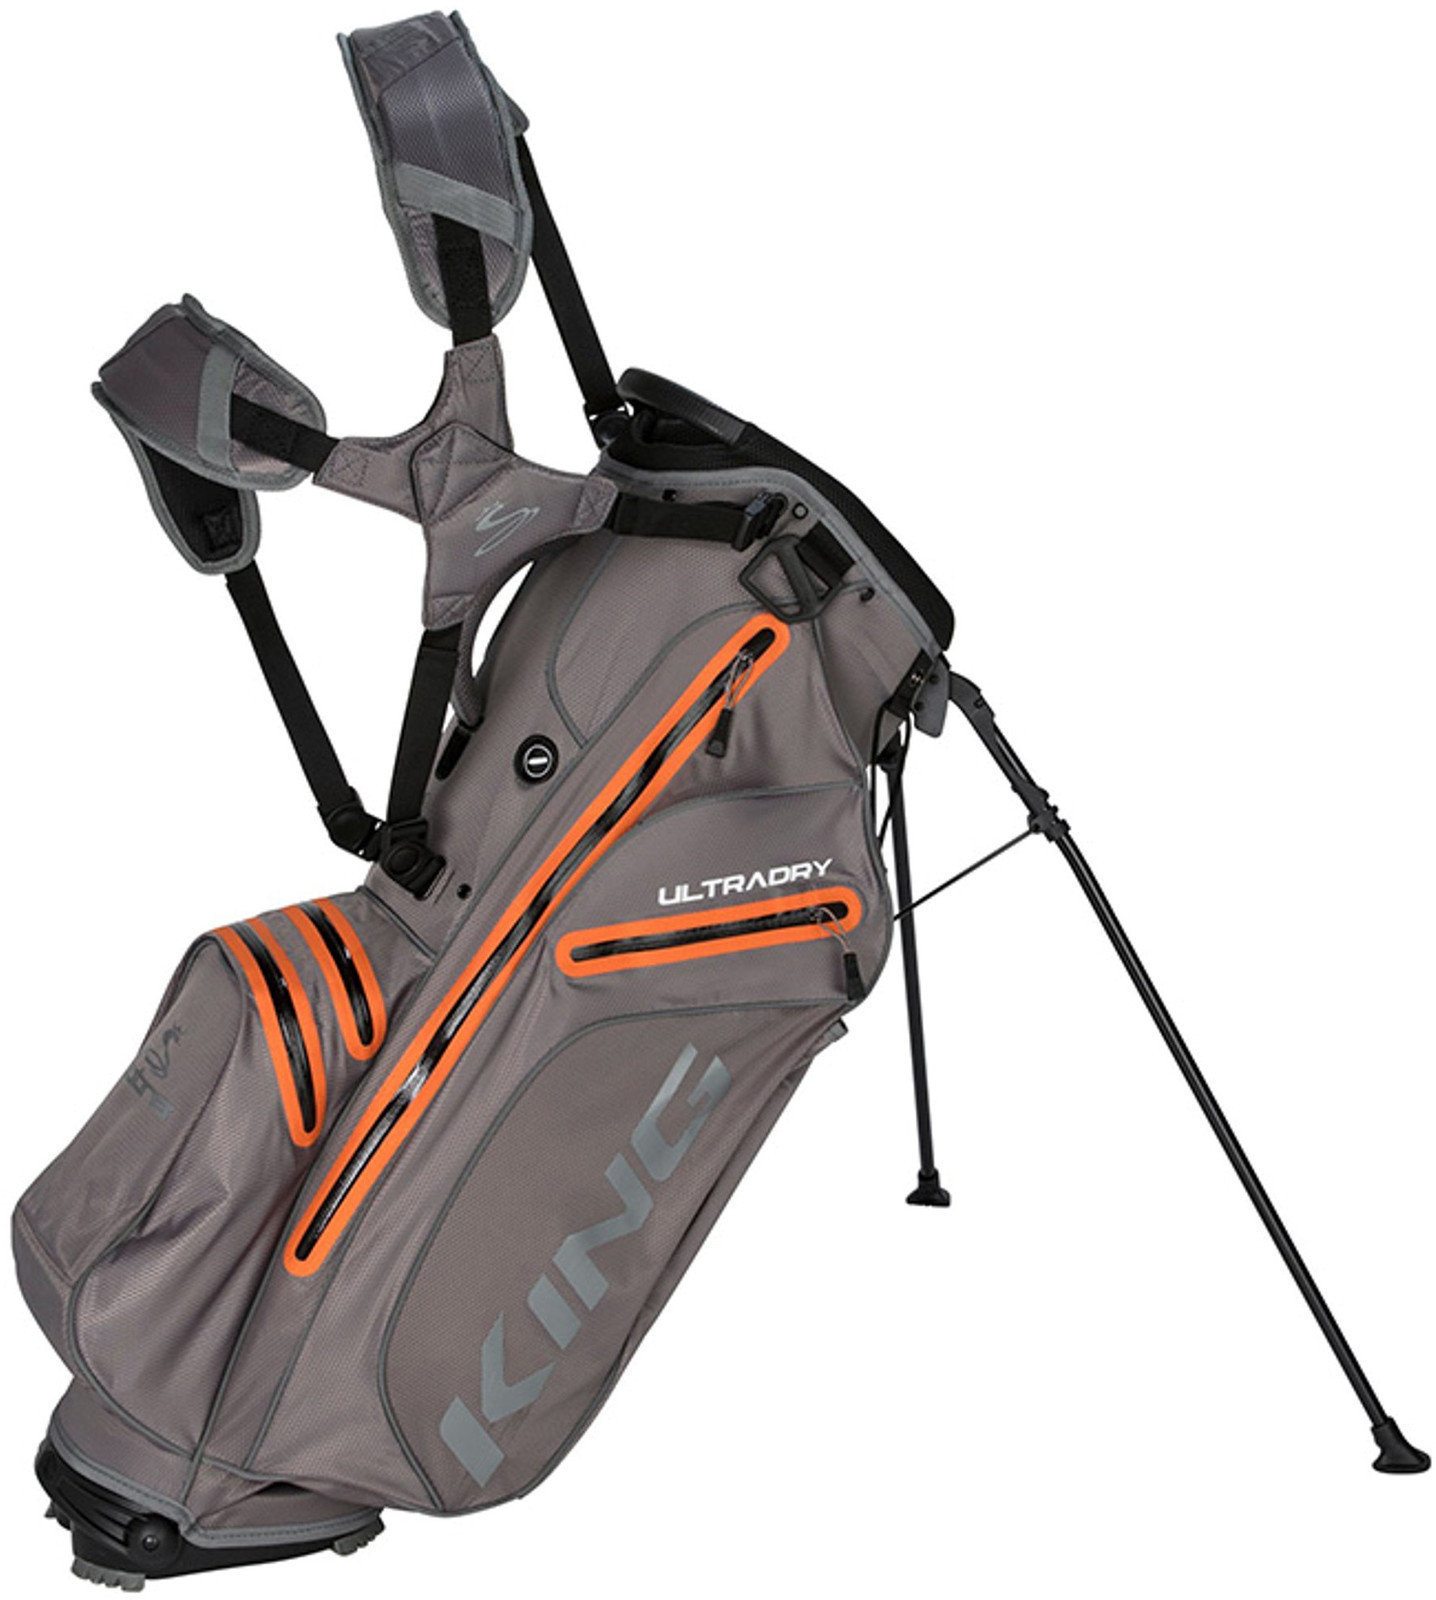 Sac de golf Cobra Golf King UltraDry Nardo Grey Stand Bag